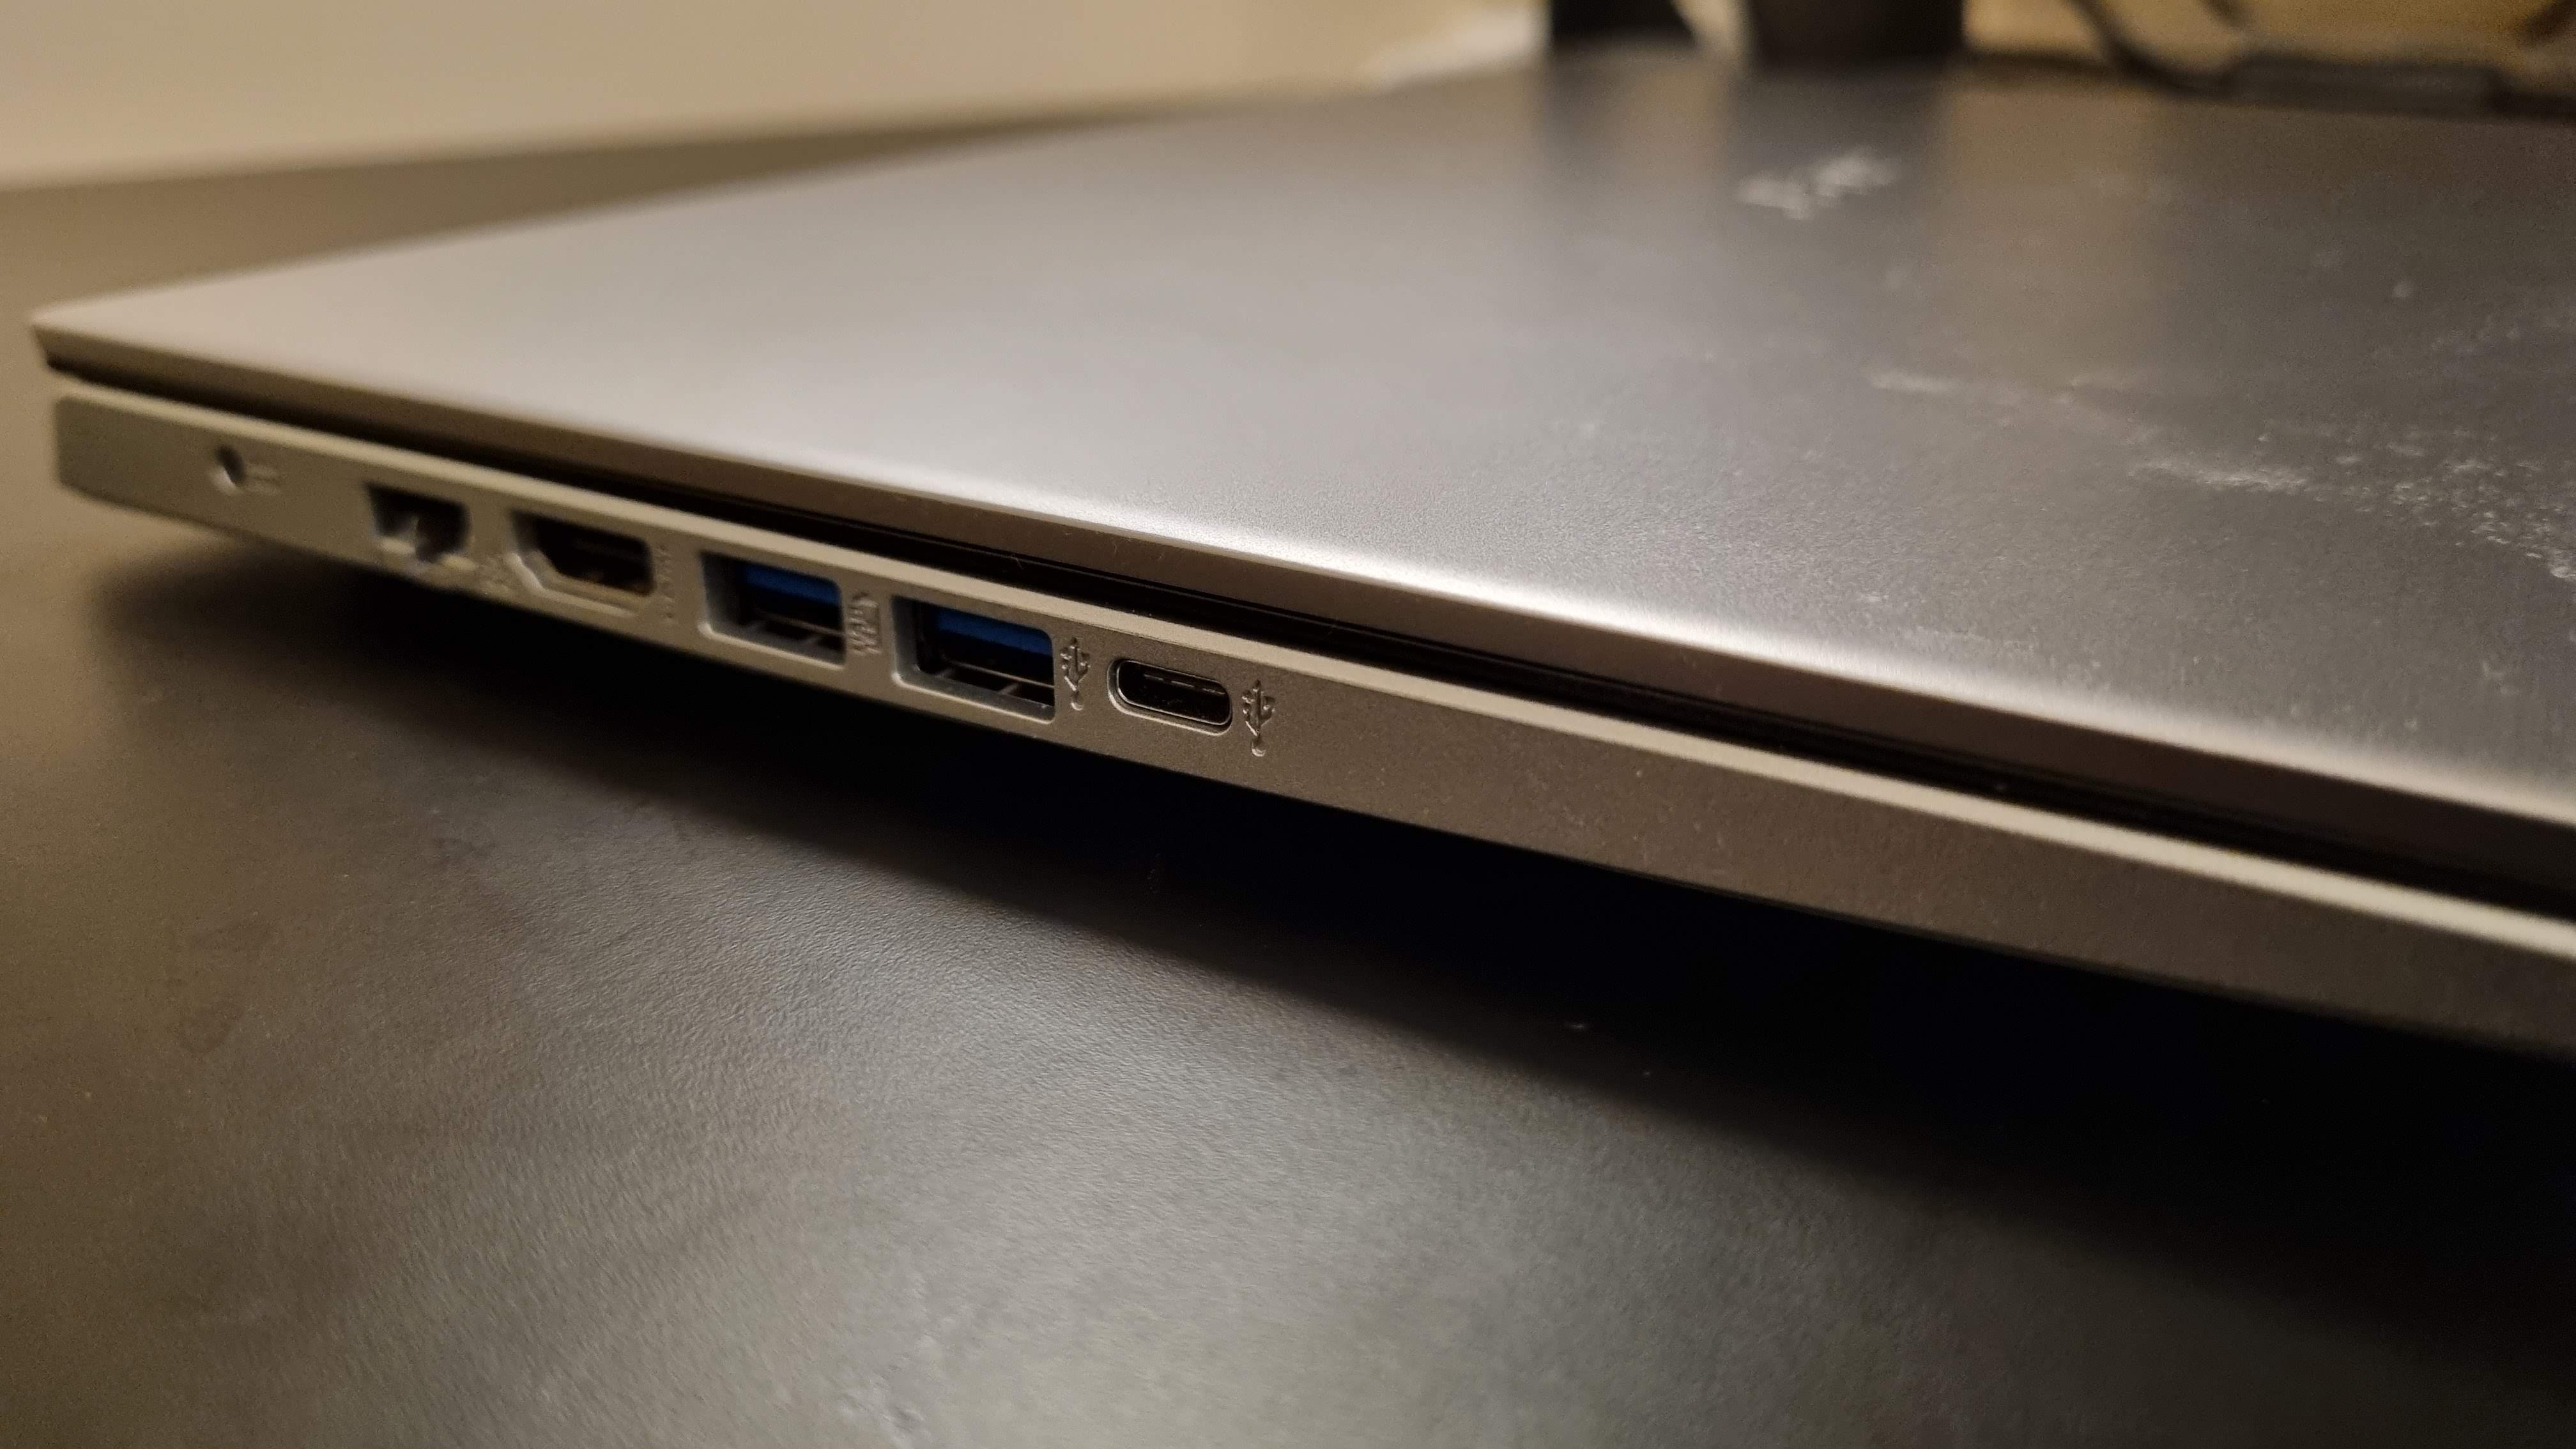 Acer Aspire 5 laptop on desktop